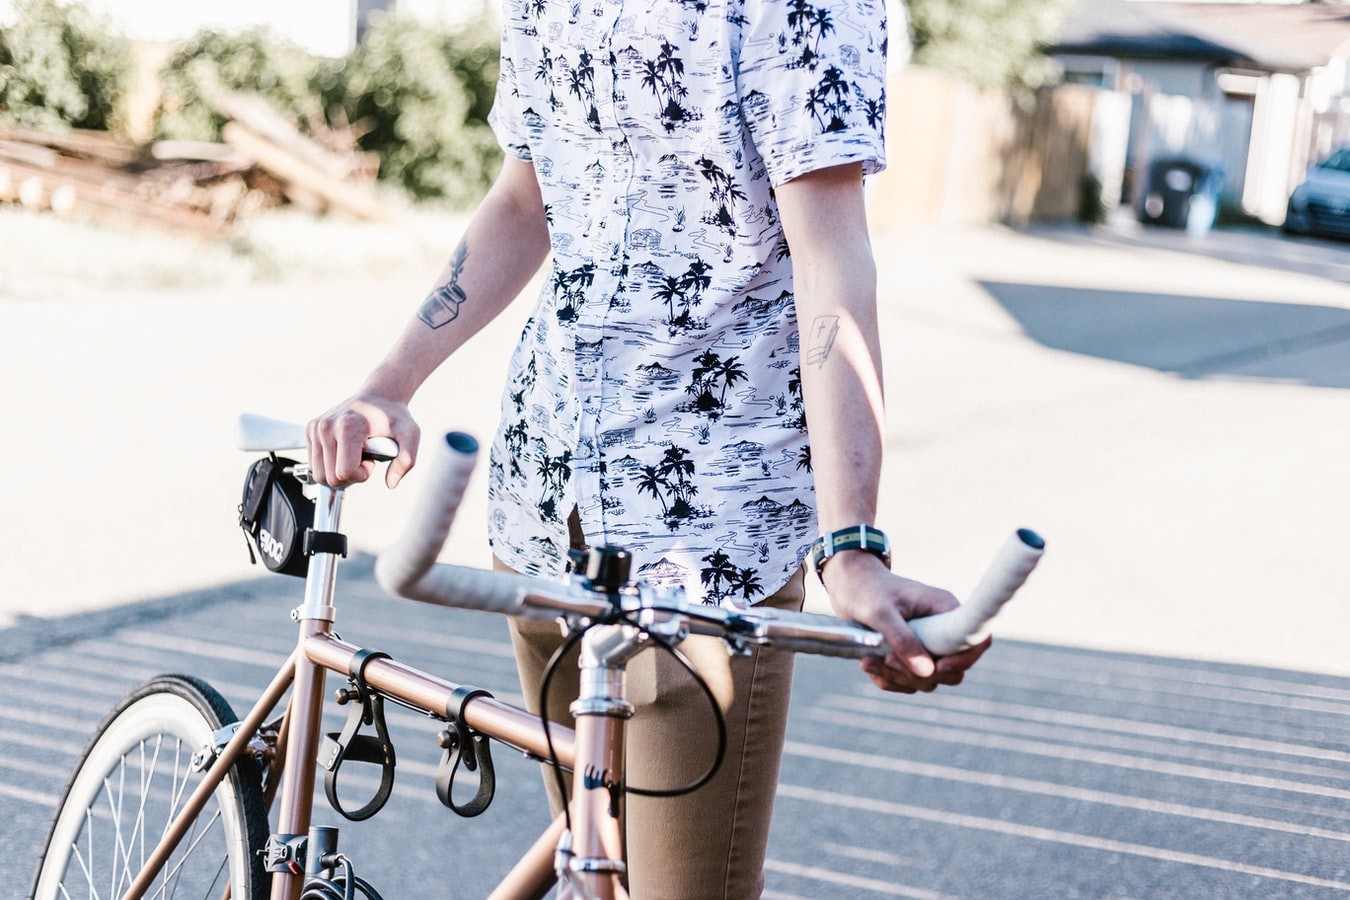 Lubisz jeździć na rowerze wiosną? Zobacz jakie trendy obowiązują rowerzystów!